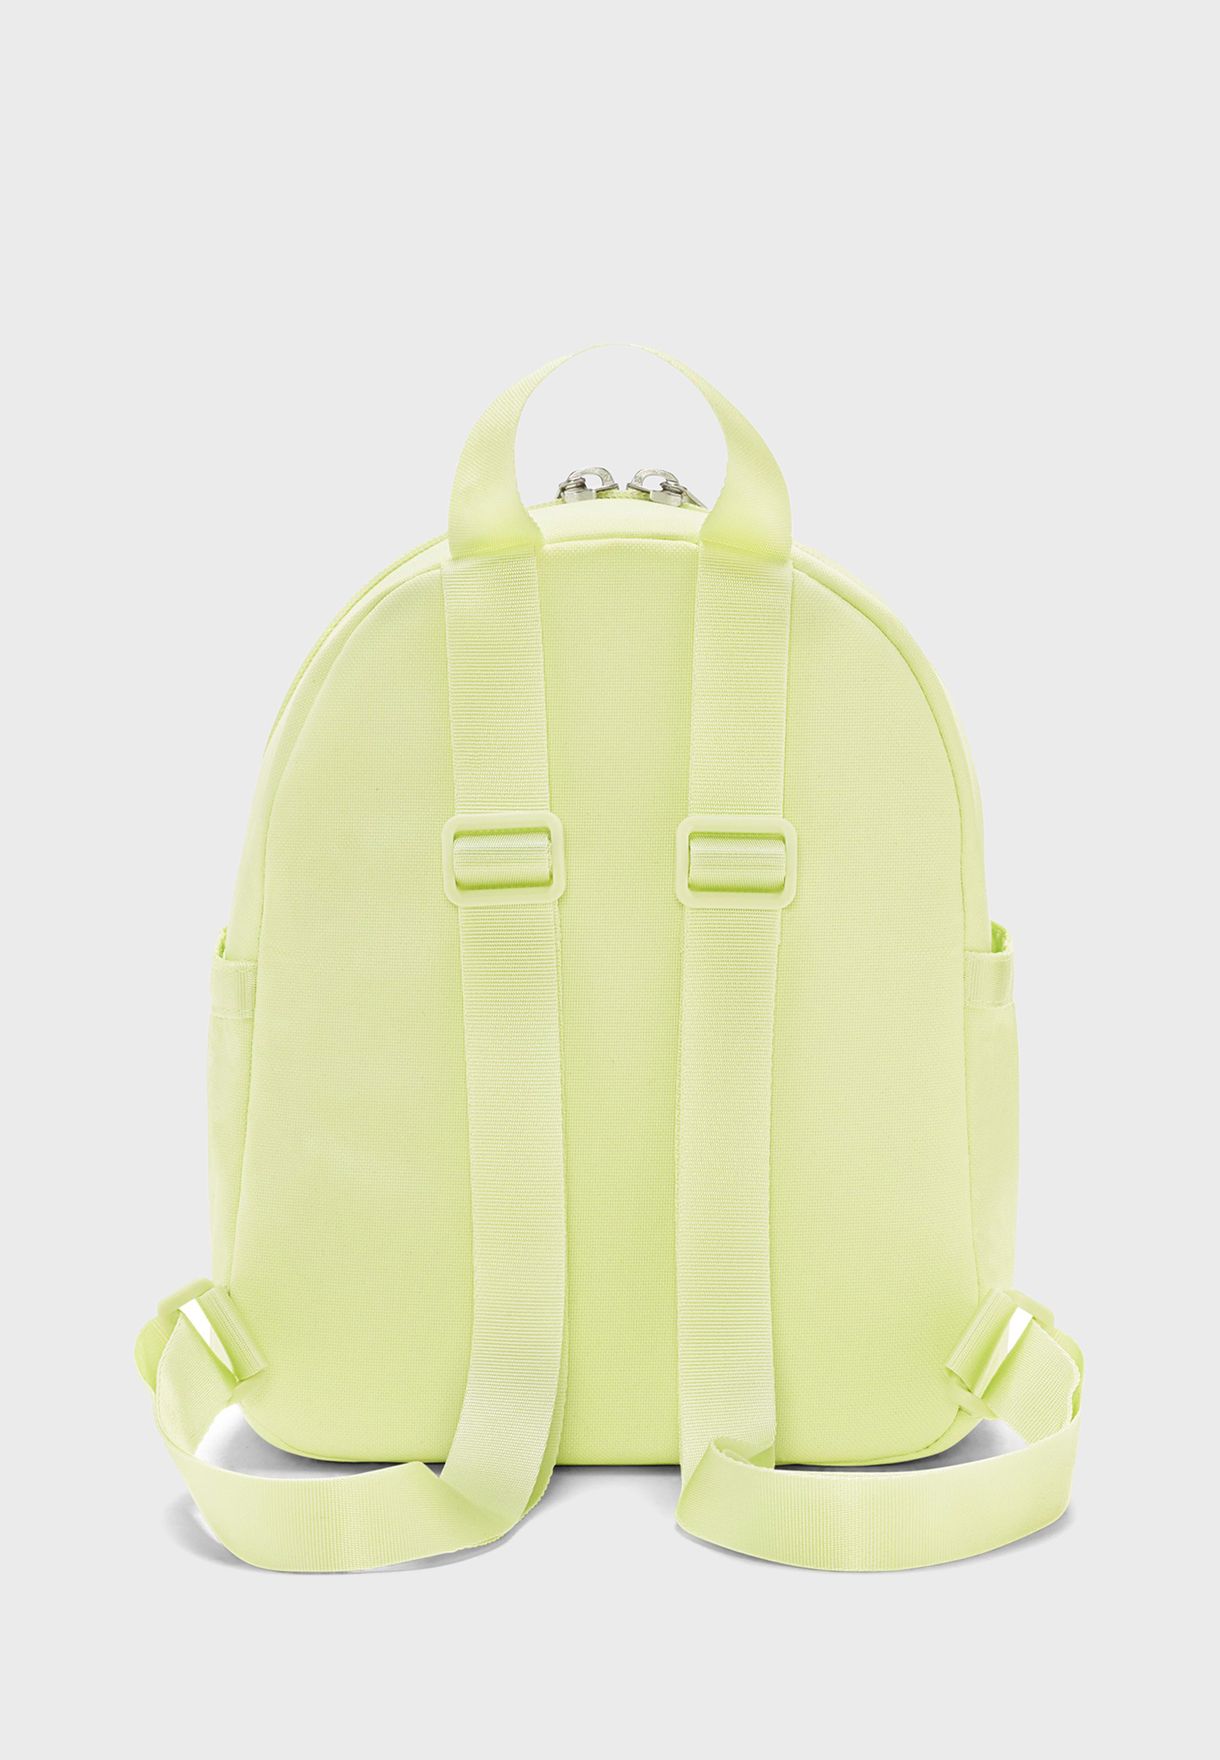 Nsw 365 Futura Mini Backpack